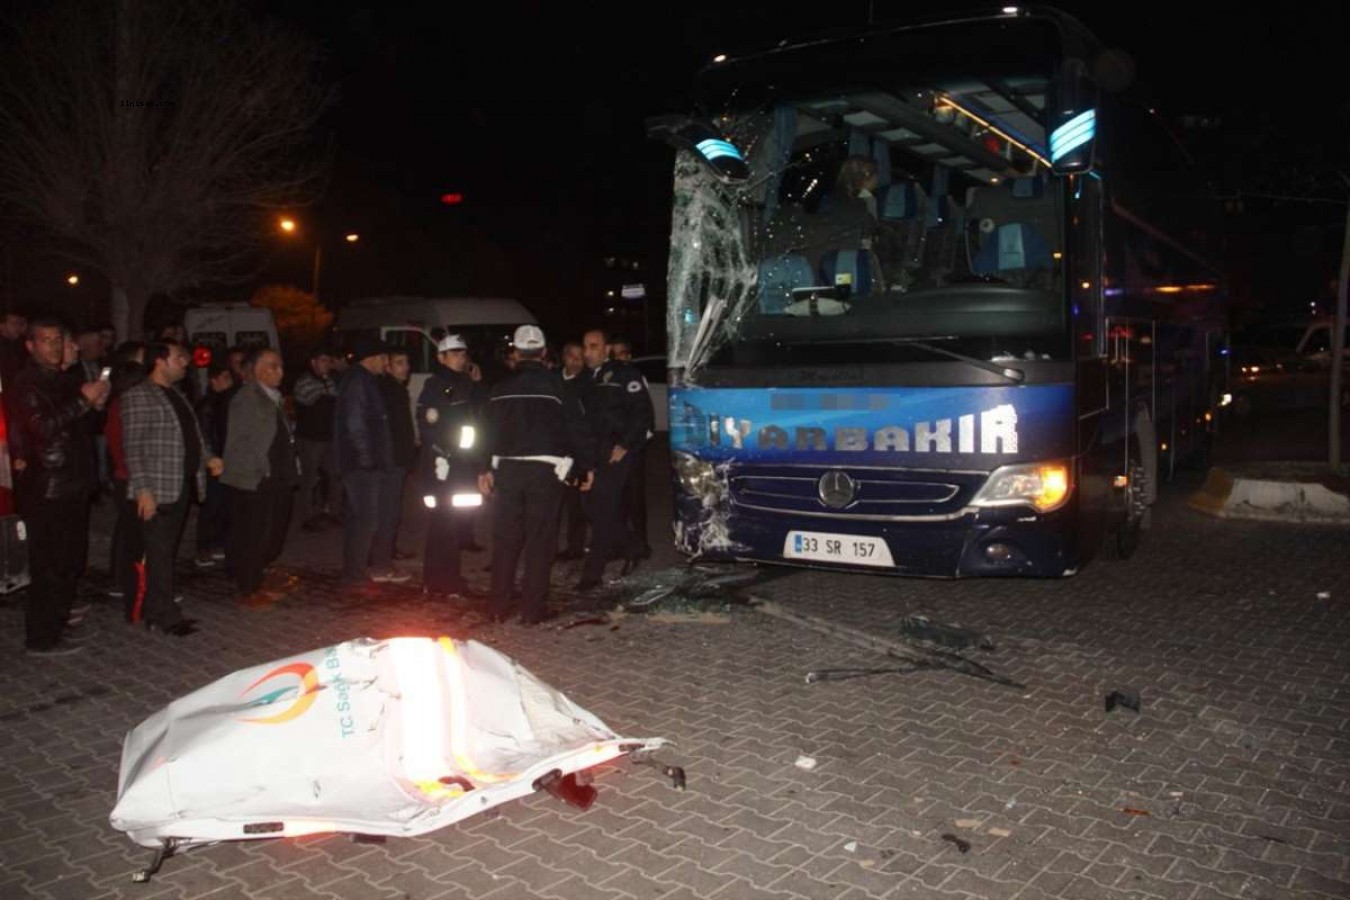 Gaziantep'teki kazada ölüm saçan otobüs sabıkalı çıktı!;